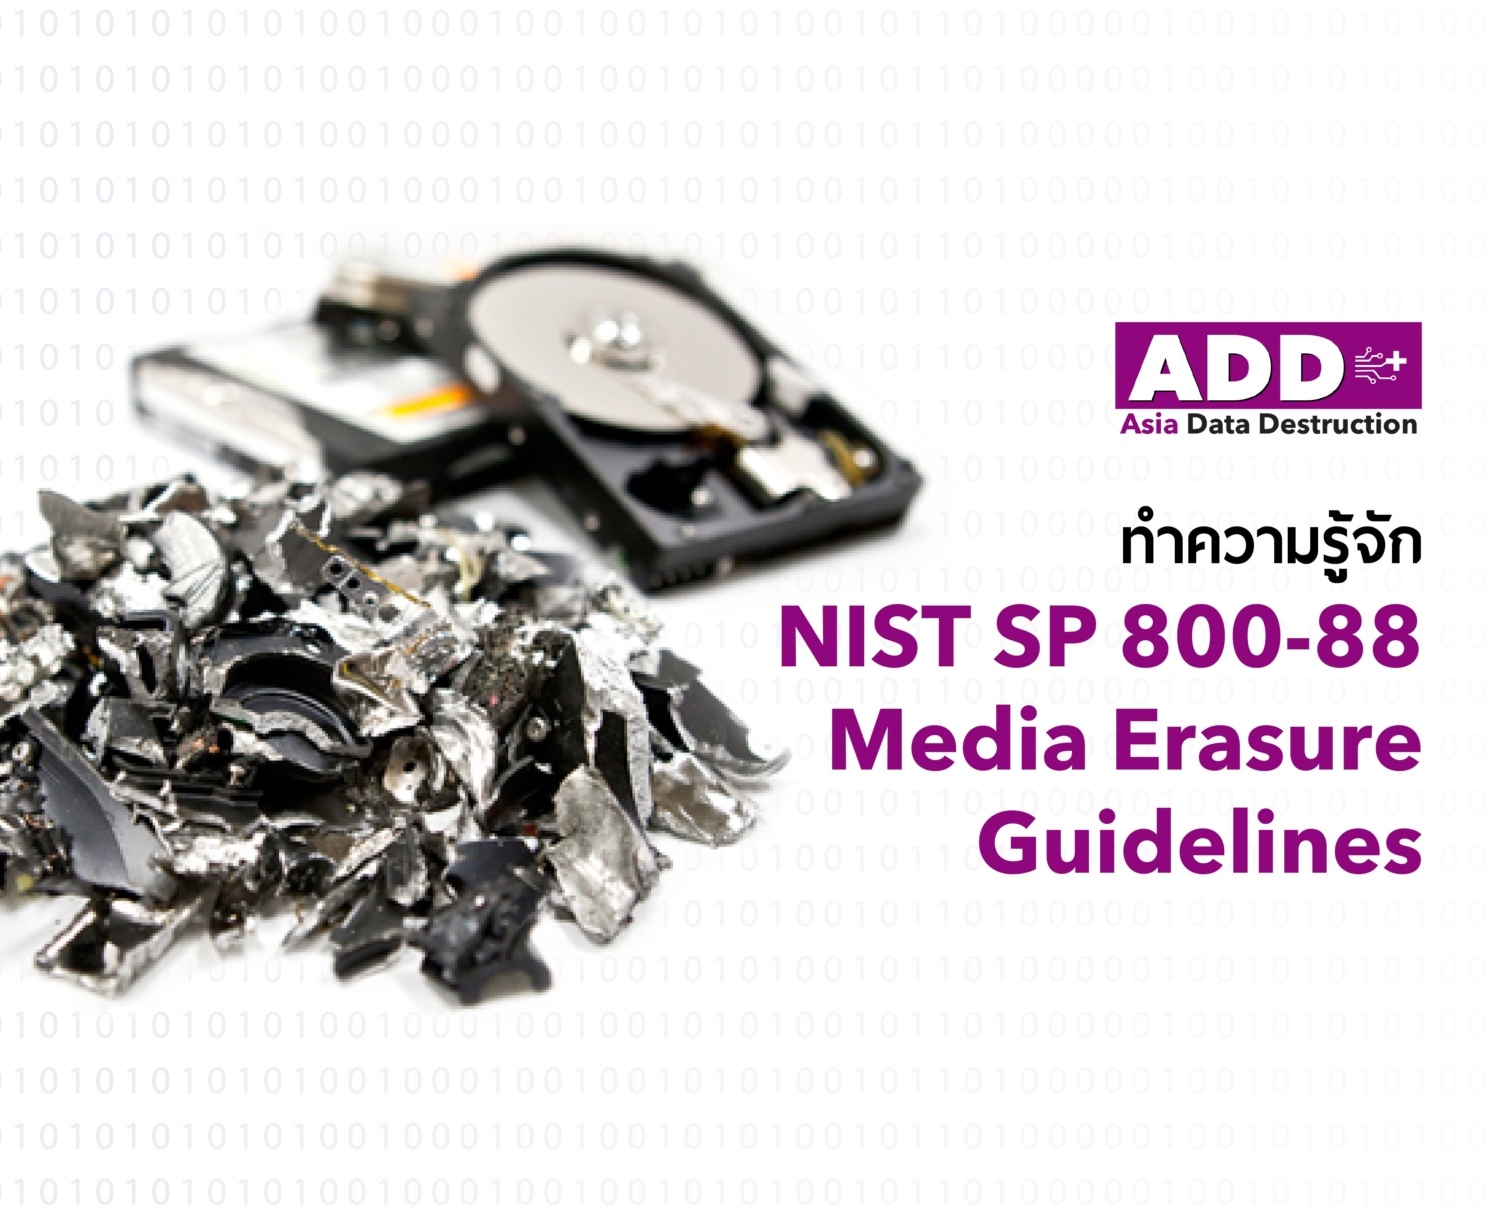 มาตรฐานการทำลายข้อมูลที่รัฐบาล และเอกชนส่วนใหญ่เลือกใช้ NIST SP 800 88